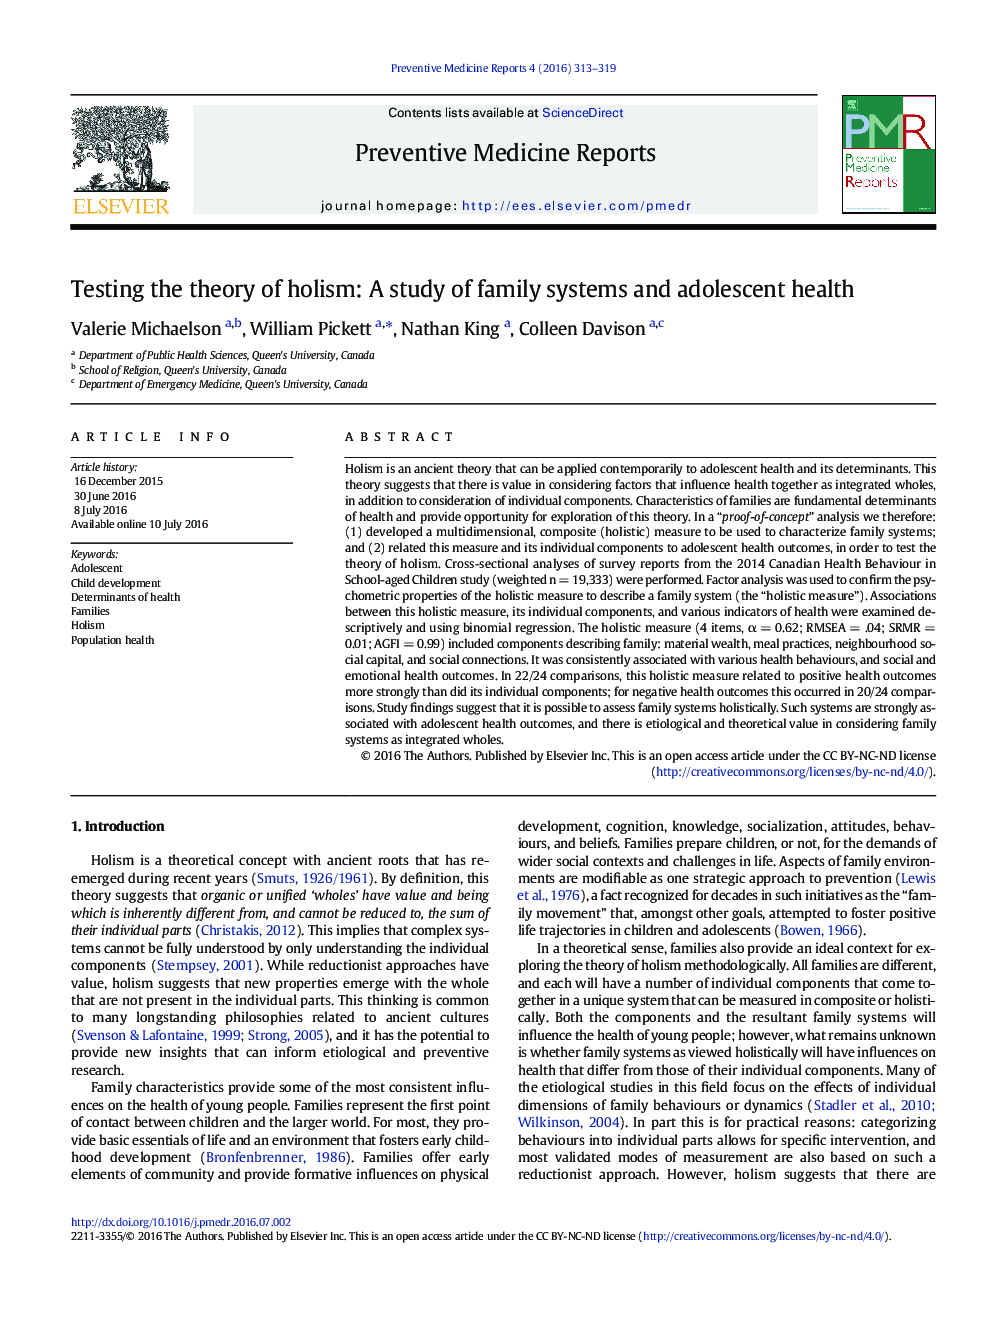 آزمون تئوری کل گرایی: مطالعه سیستم های خانواده و سلامت نوجوانان